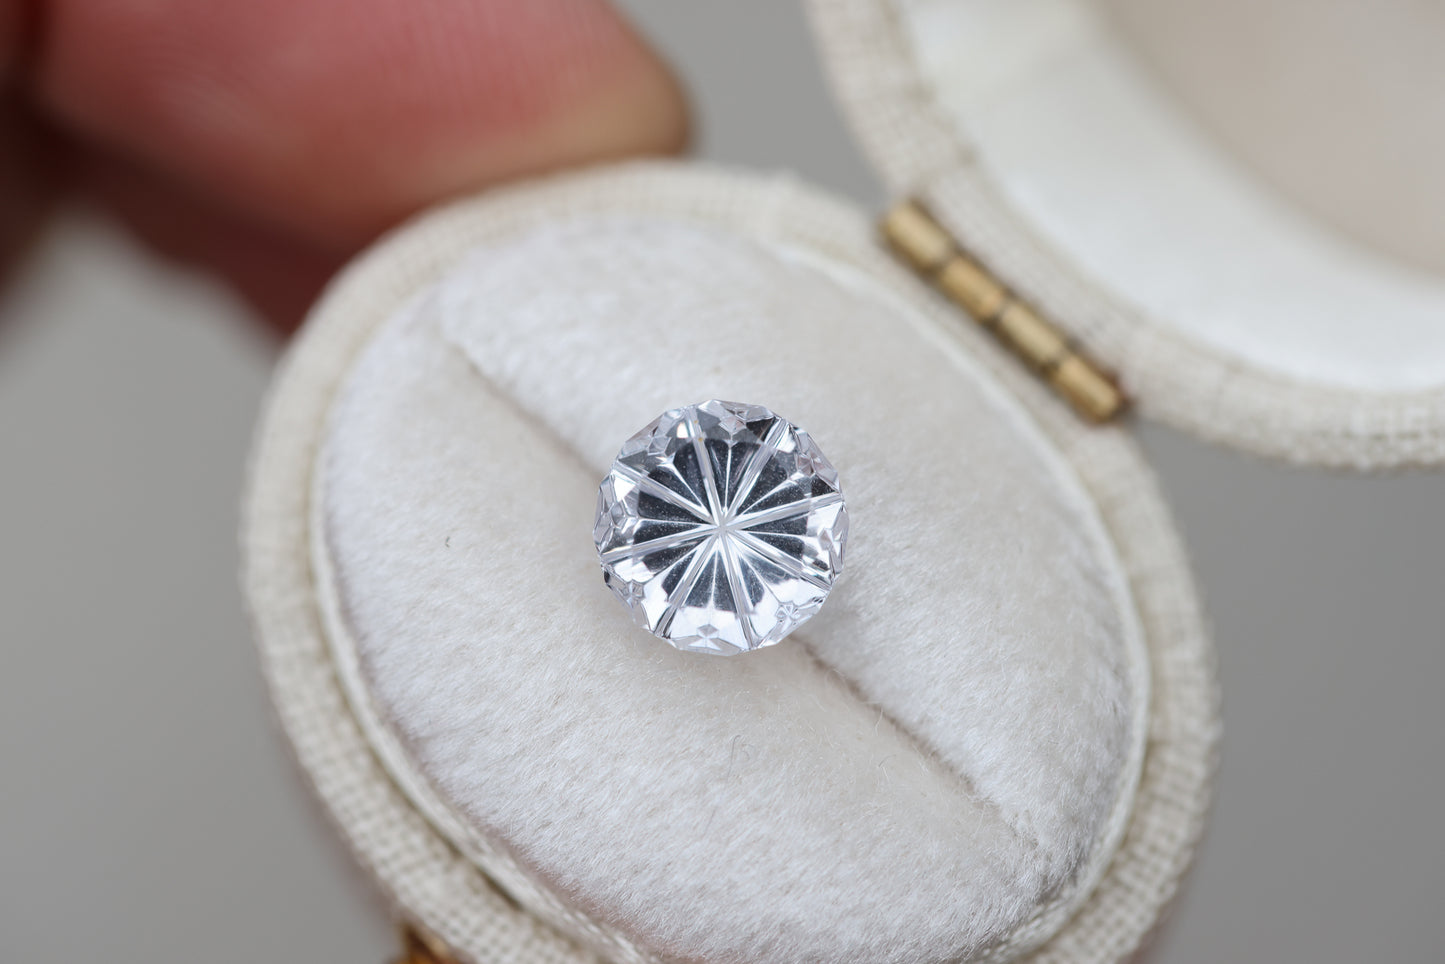 2.2ct round white sapphire - Starbrite cut by John Dyer